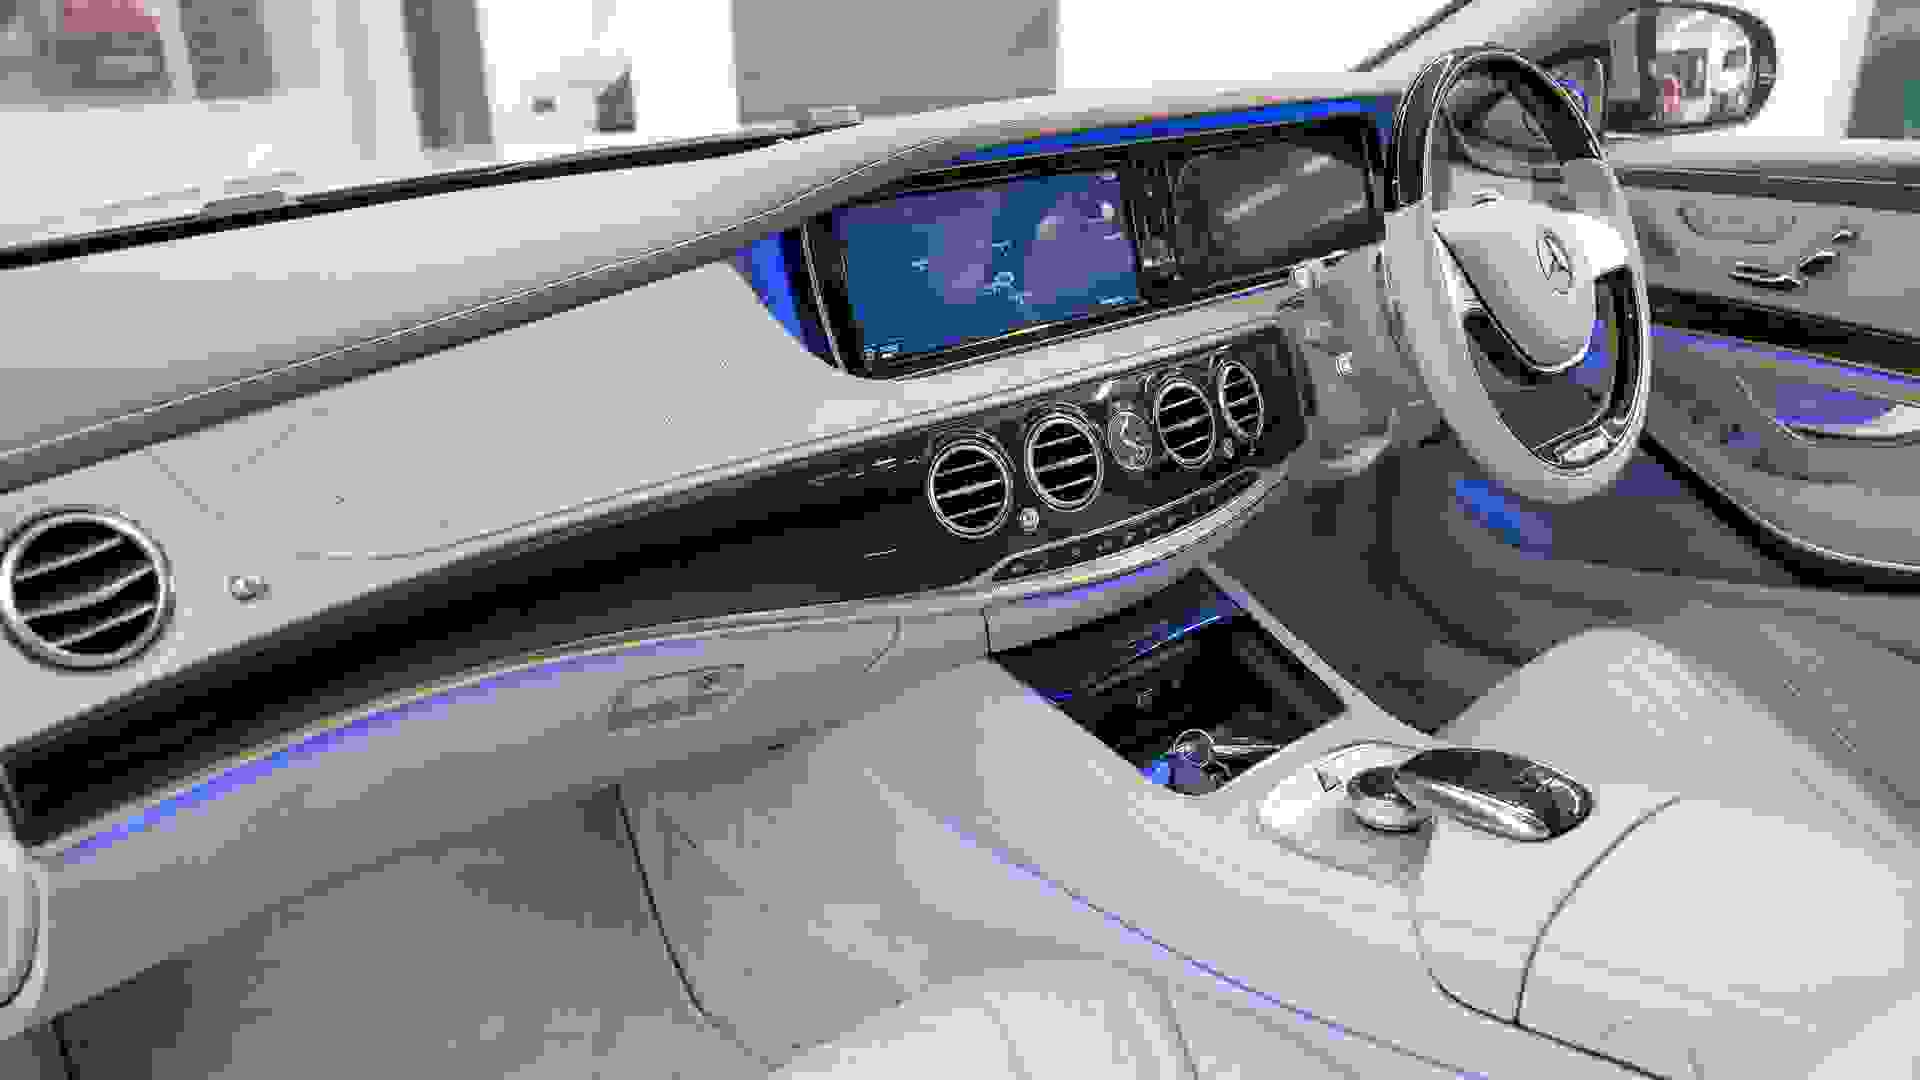 Mercedes-Benz Maybach S600 Photo 1c1082b4-a490-455a-9b7a-eaaa00444b20.jpg